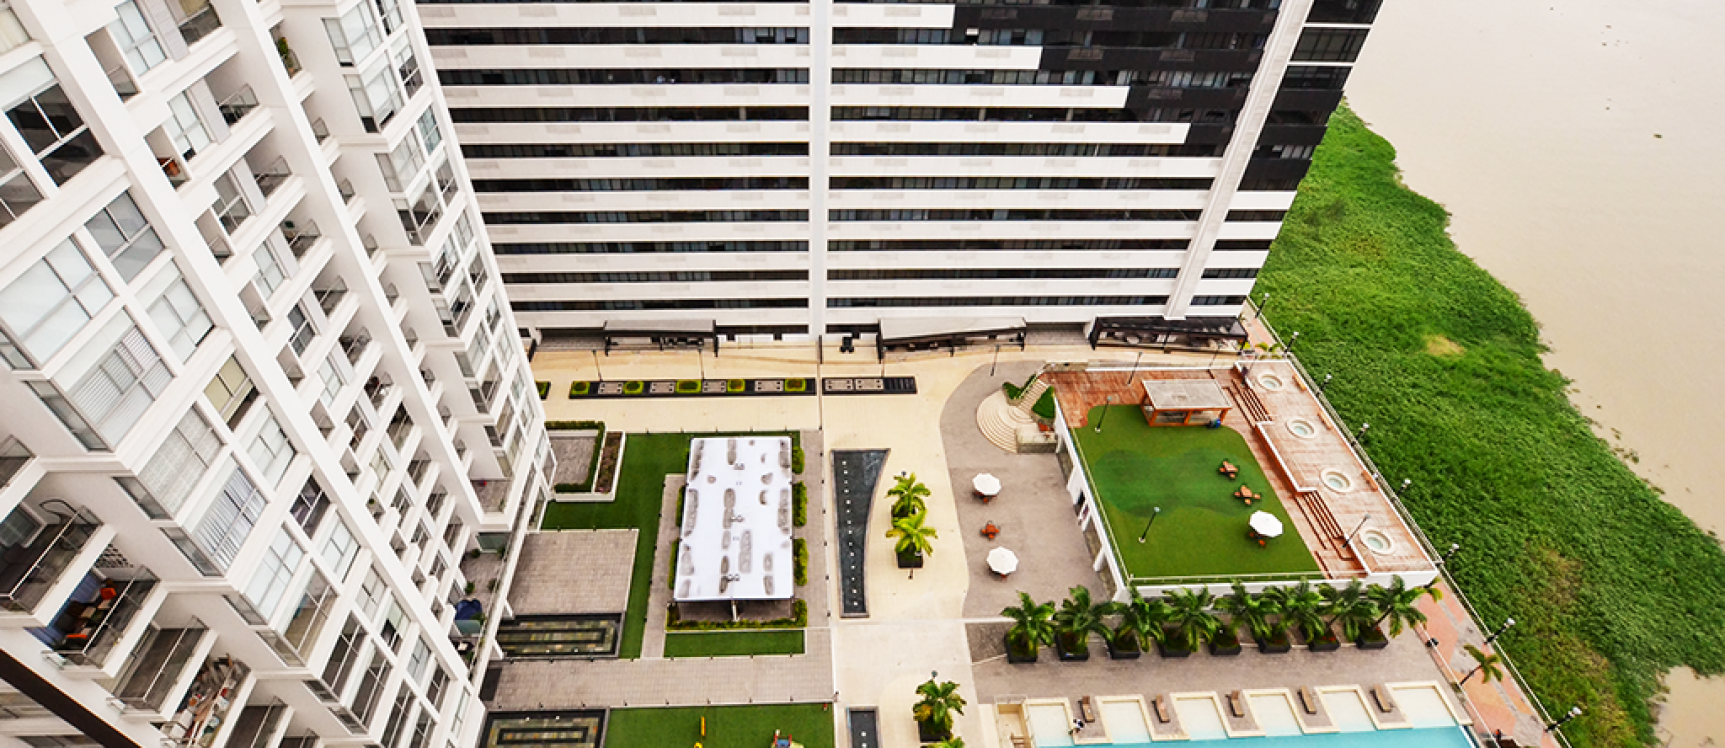 GeoBienes - Departamento en Venta sector centro de Guayaquil - Plusvalia Guayaquil Casas de venta y alquiler Inmobiliaria Ecuador